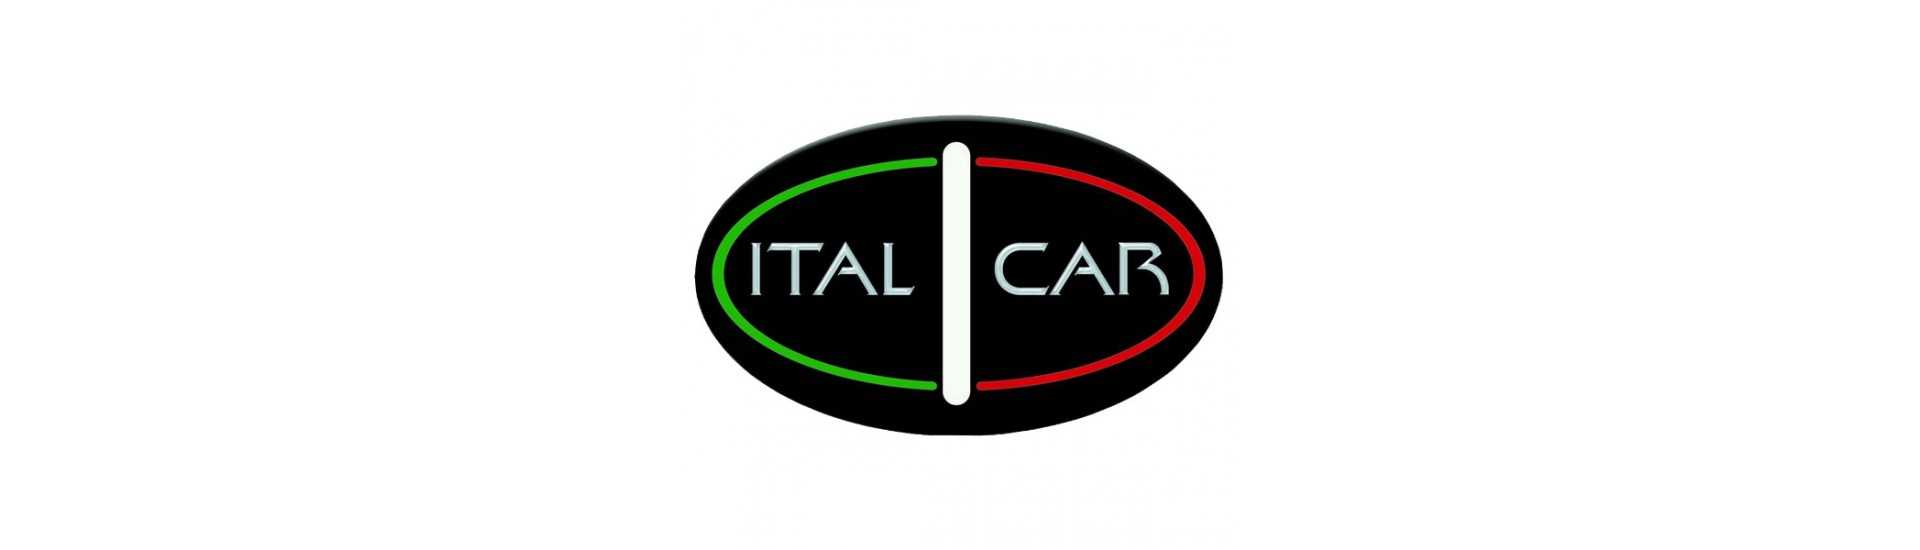 Carrosserie zum besten Preis für Auto ohne Lizenz Italcar